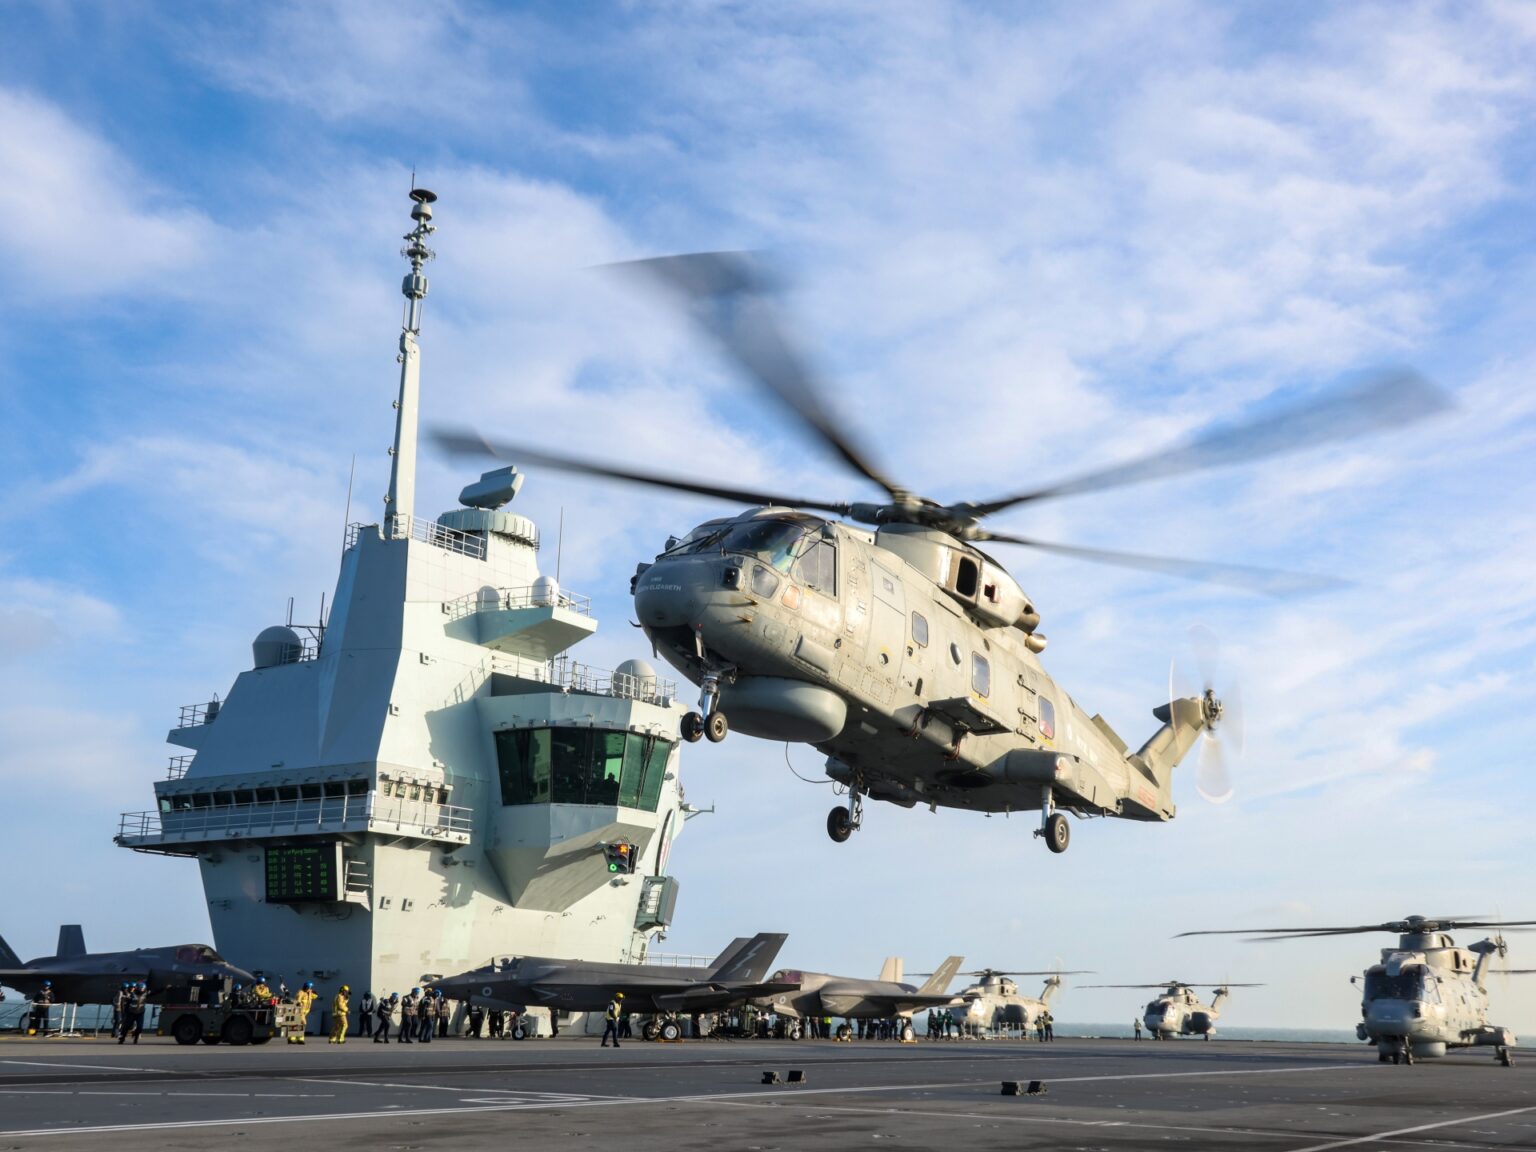 Japan, UK renew security ties, aircraft carrier